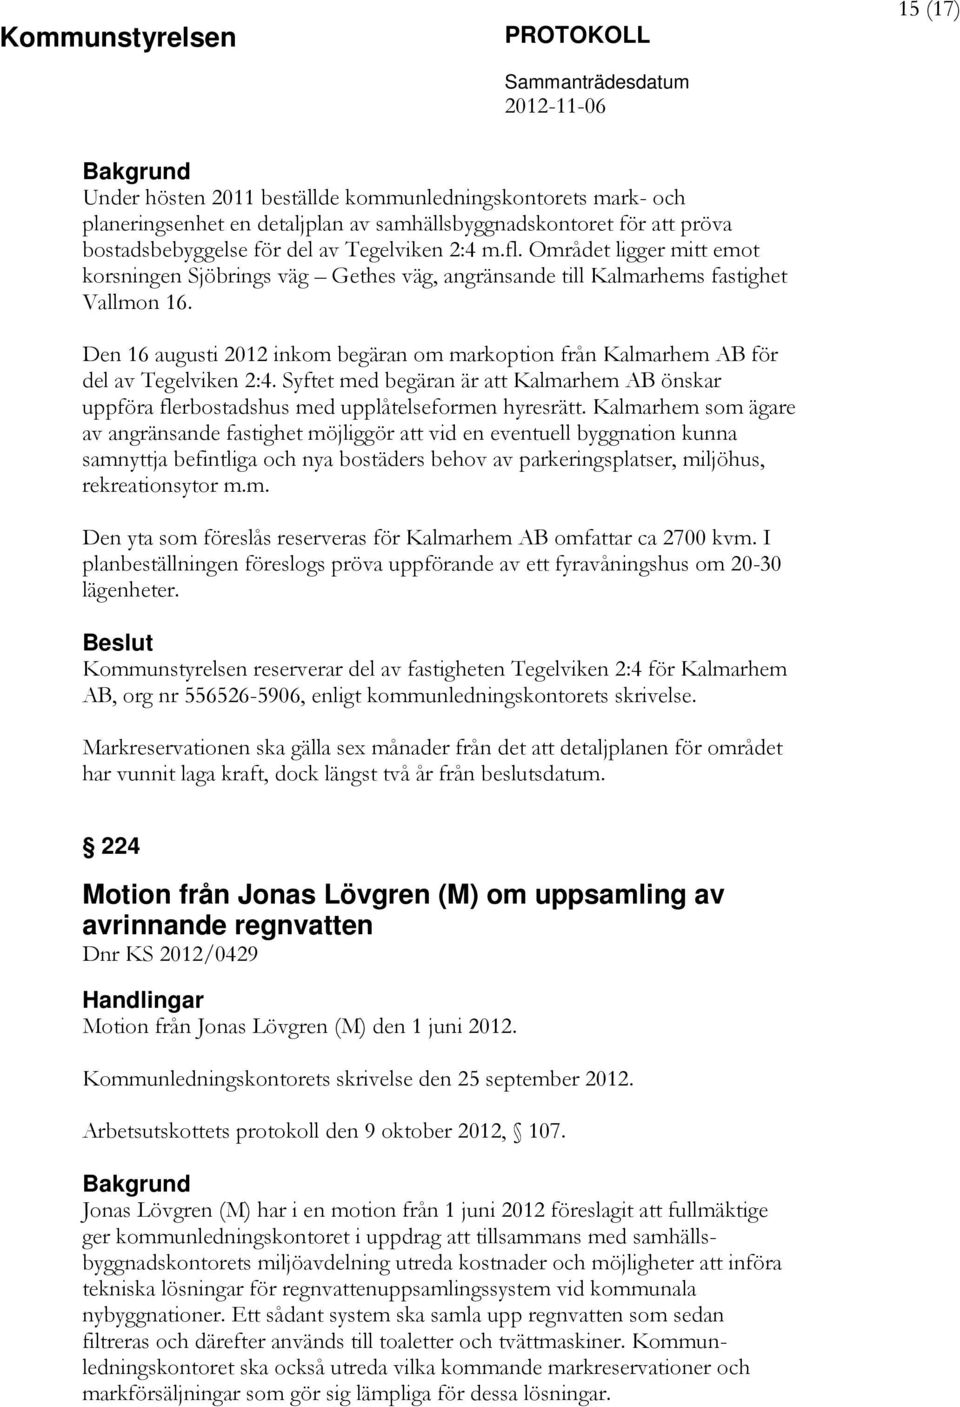 Den 16 augusti 2012 inkom begäran om markoption från Kalmarhem AB för del av Tegelviken 2:4. Syftet med begäran är att Kalmarhem AB önskar uppföra flerbostadshus med upplåtelseformen hyresrätt.